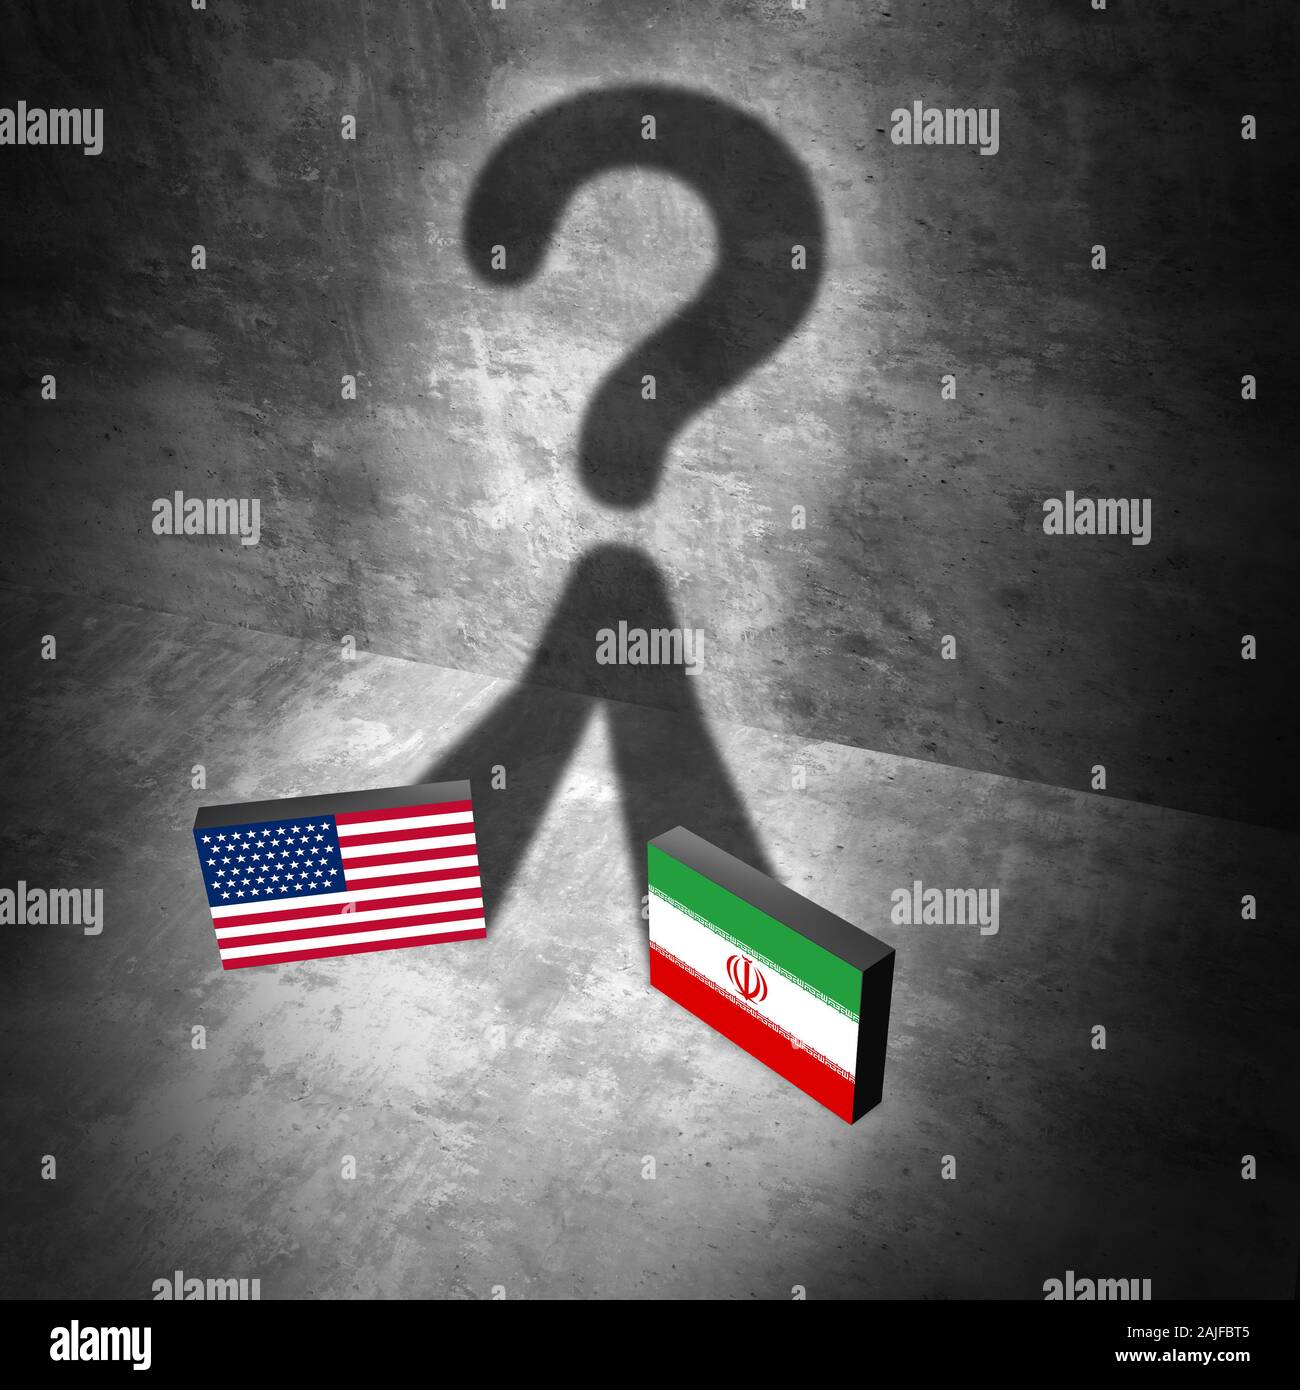 Iraniano domande americano come militari USA la guerra di tensione o di conflitto degli Stati Uniti in Medio Oriente il concetto di crisi come un problema di sicurezza per motivi economici. Foto Stock